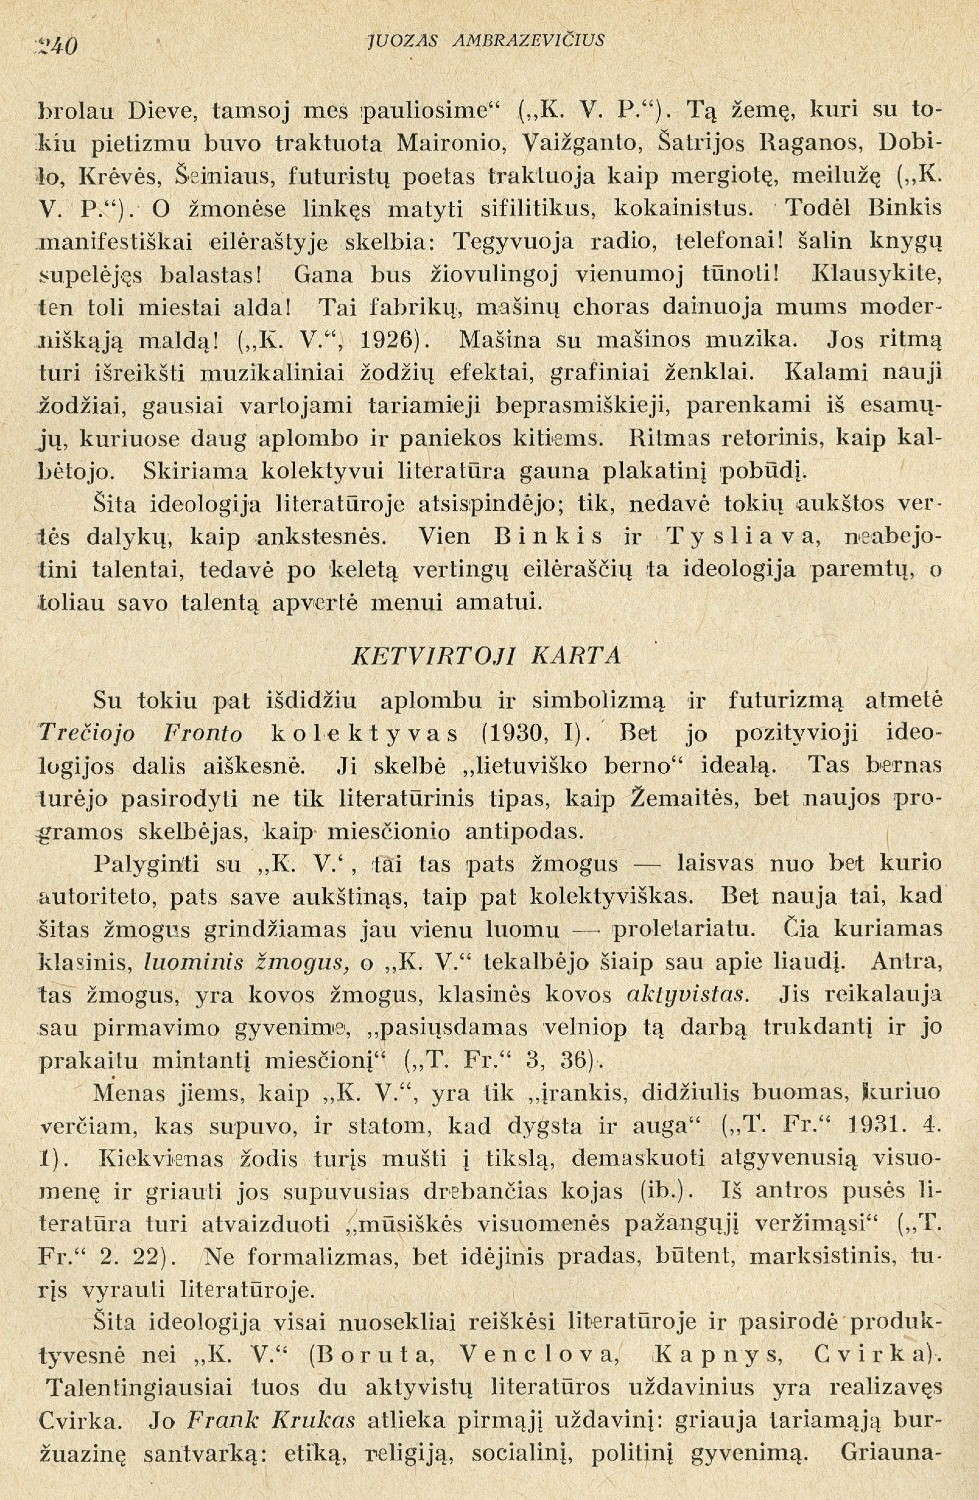 Naujosios lietuvių literatūros idėjinės ir forminės linkmės / Juozas Ambrazevičius // LKMA Suvažiavimo darbai. – Kaunas, 1936, t. 2, p. 233–246.